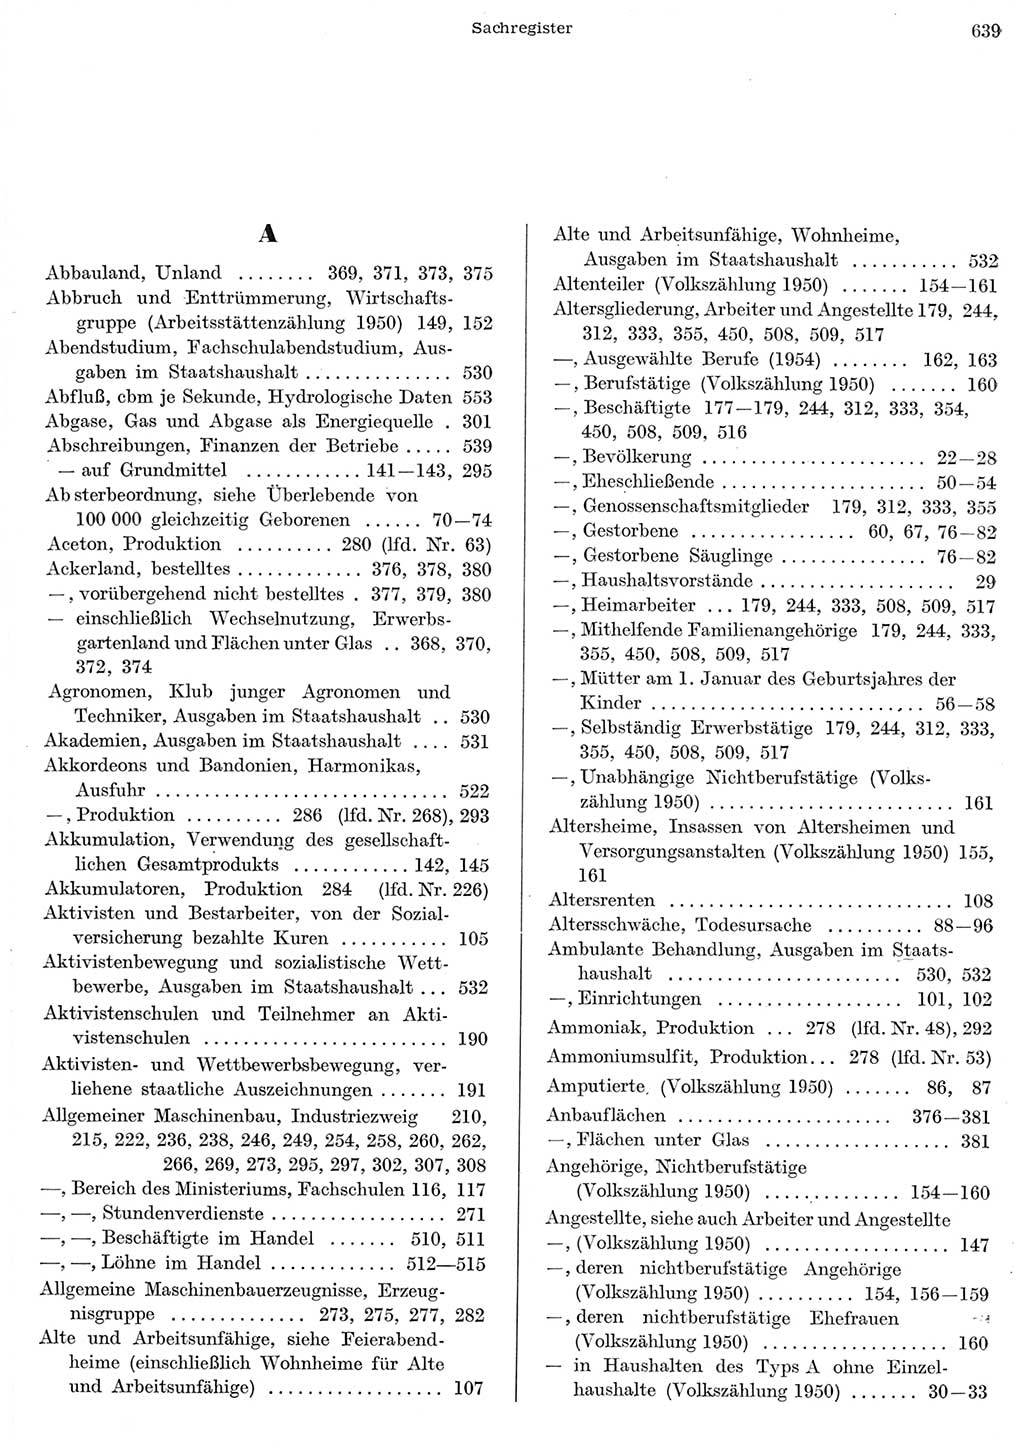 Statistisches Jahrbuch der Deutschen Demokratischen Republik (DDR) 1956, Seite 639 (Stat. Jb. DDR 1956, S. 639)